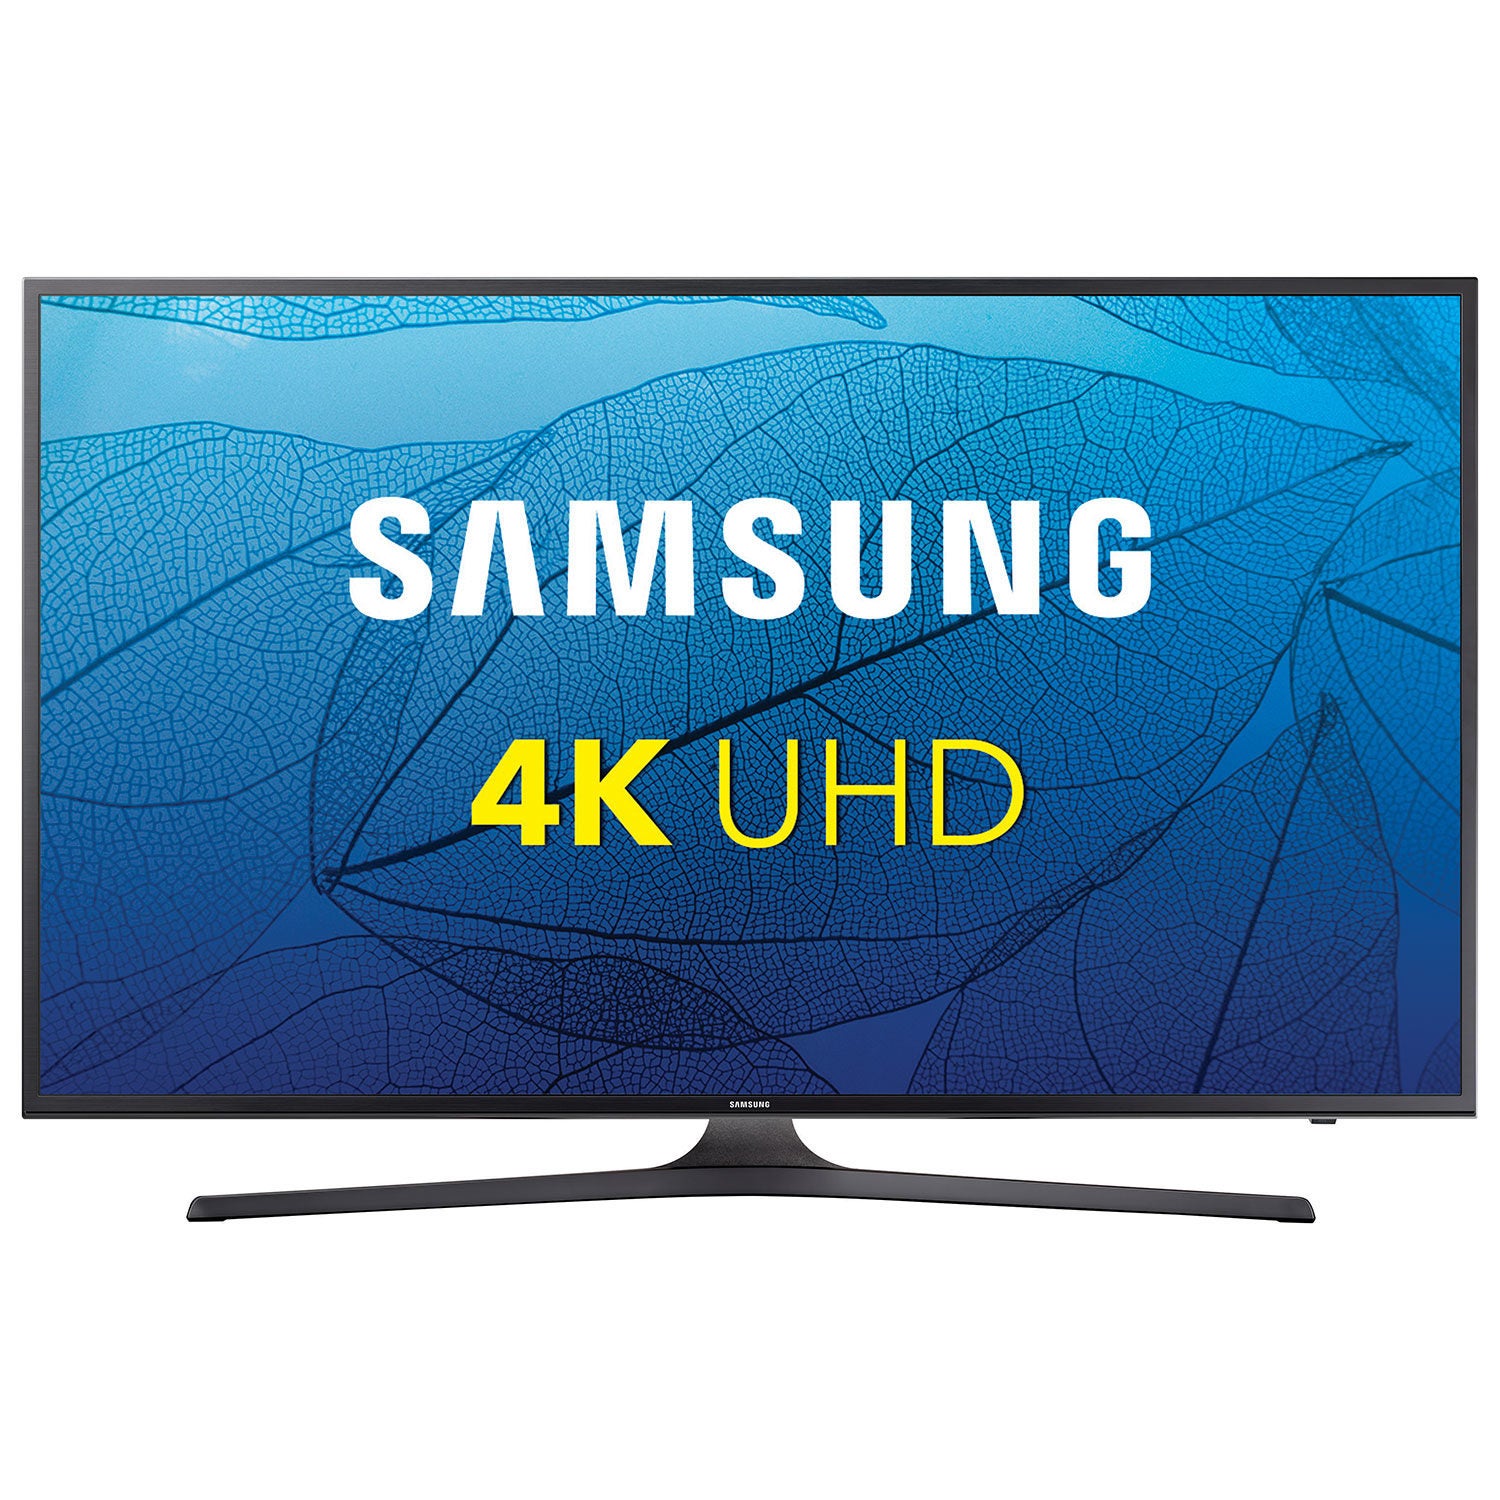 Самсунг телевизор каталог. Samsung Smart TV 40. Samsung led 40 Smart TV 2013. Samsung Tizen Smart TV 43.